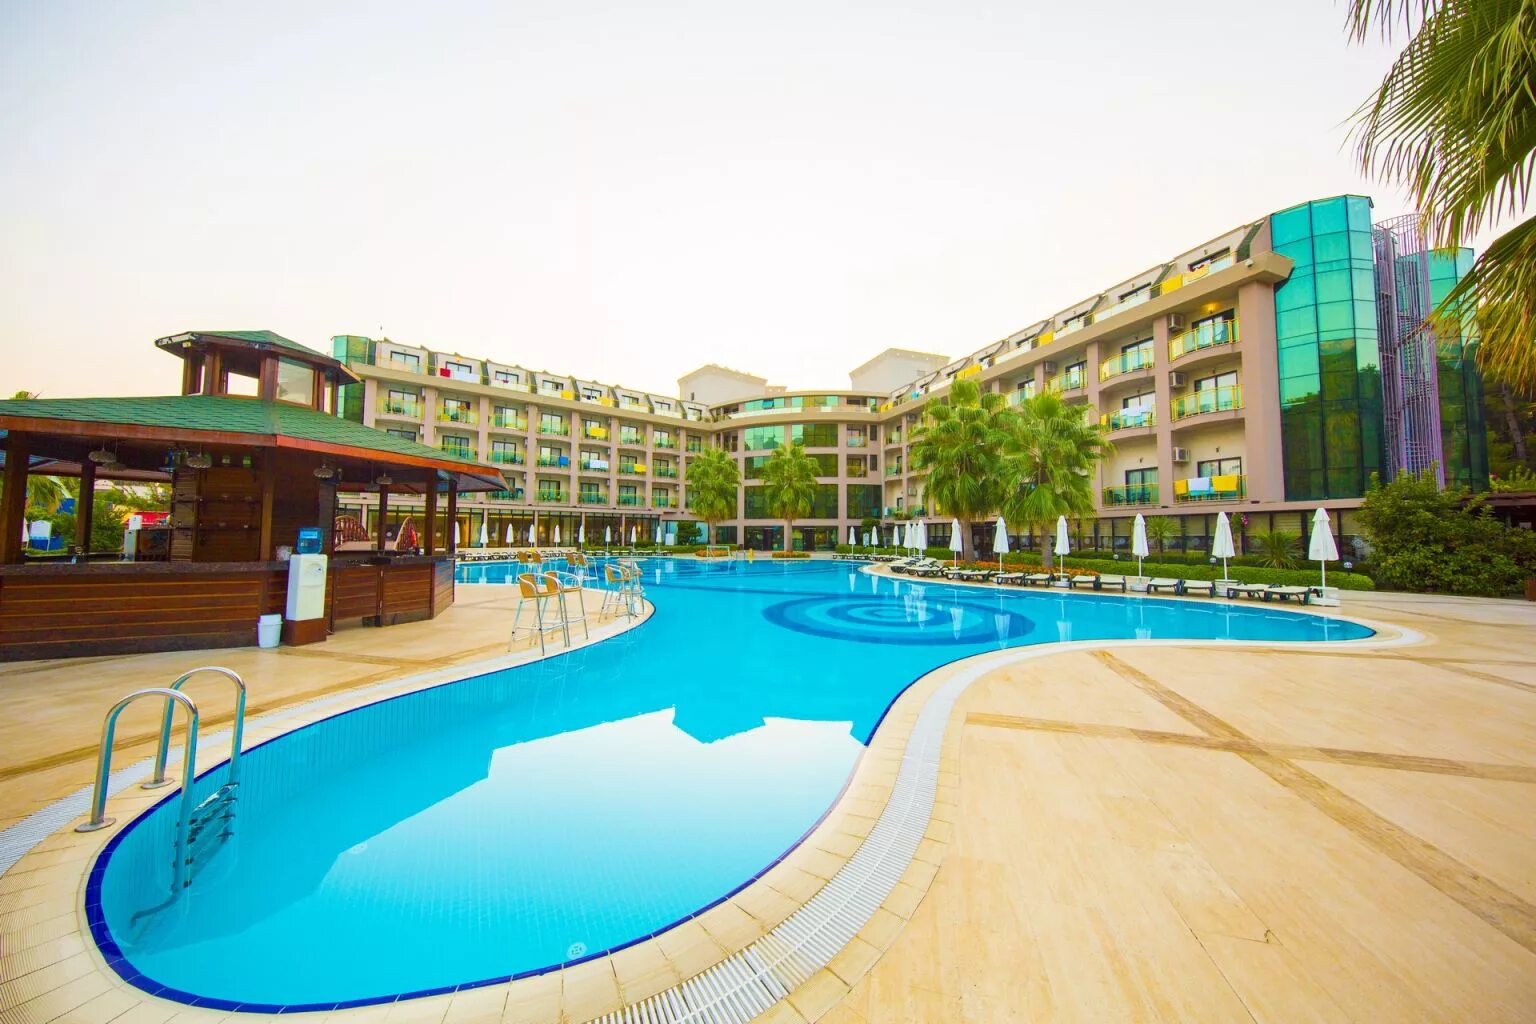 Отель Eldar Resort 4 Турция. Eldar garden hotel 4 турция